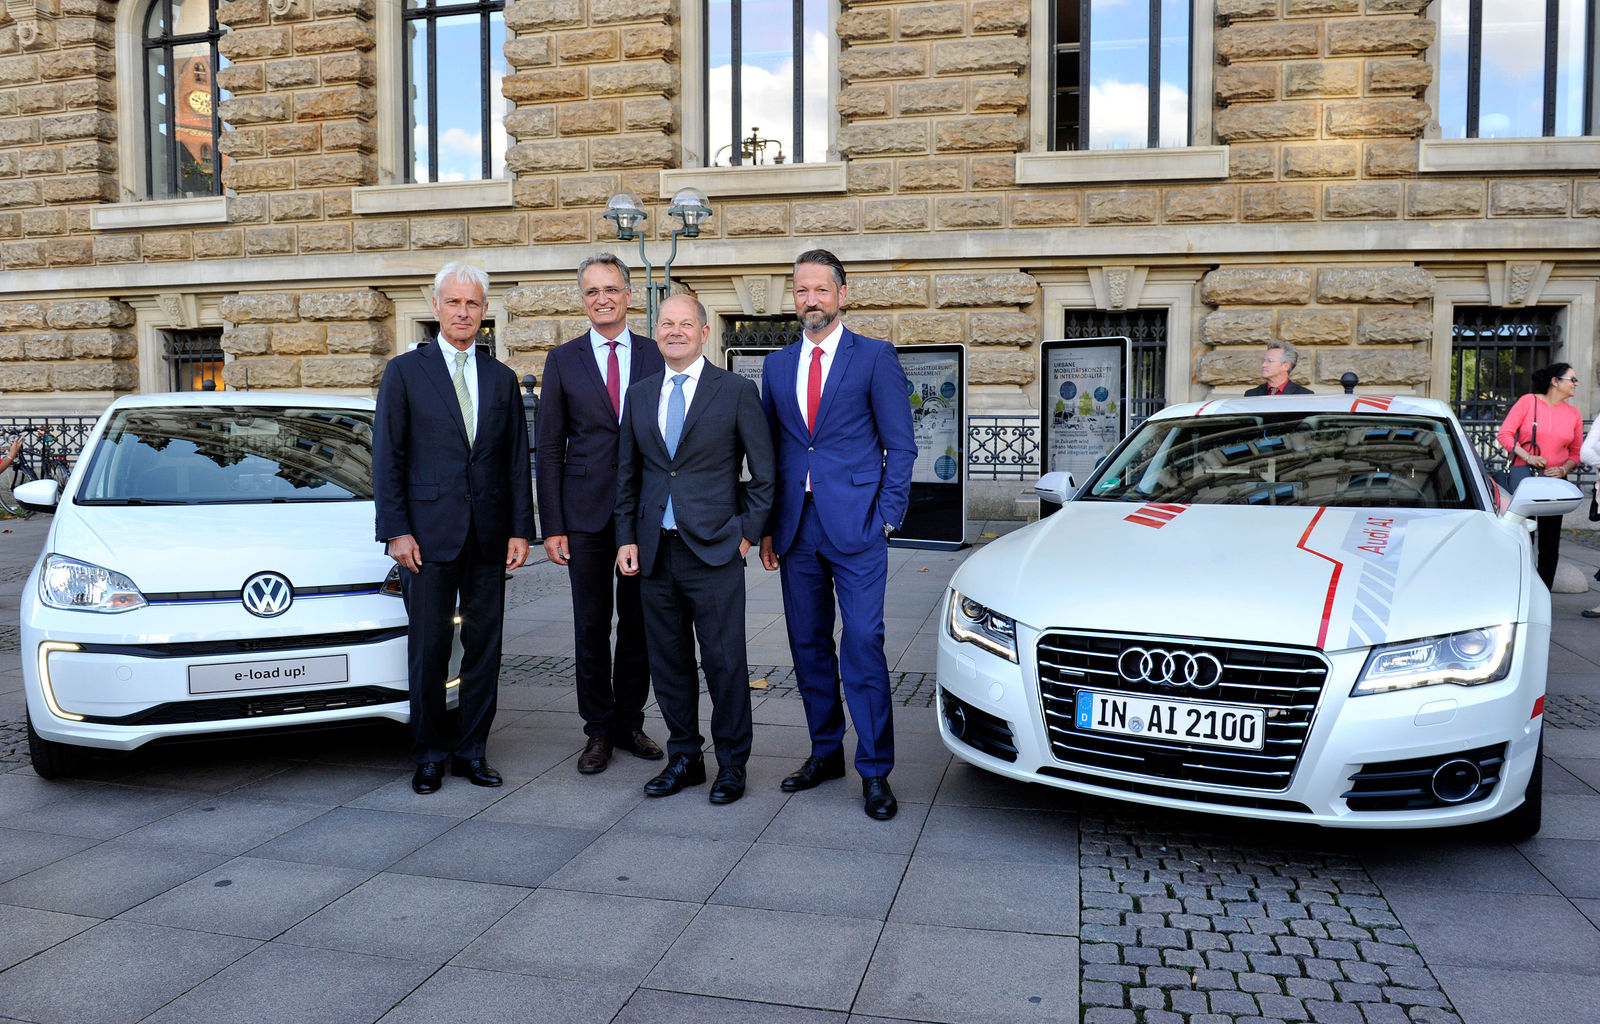 Hamburg und Volkswagen vereinbaren strategische Mobilitätspartnerschaft